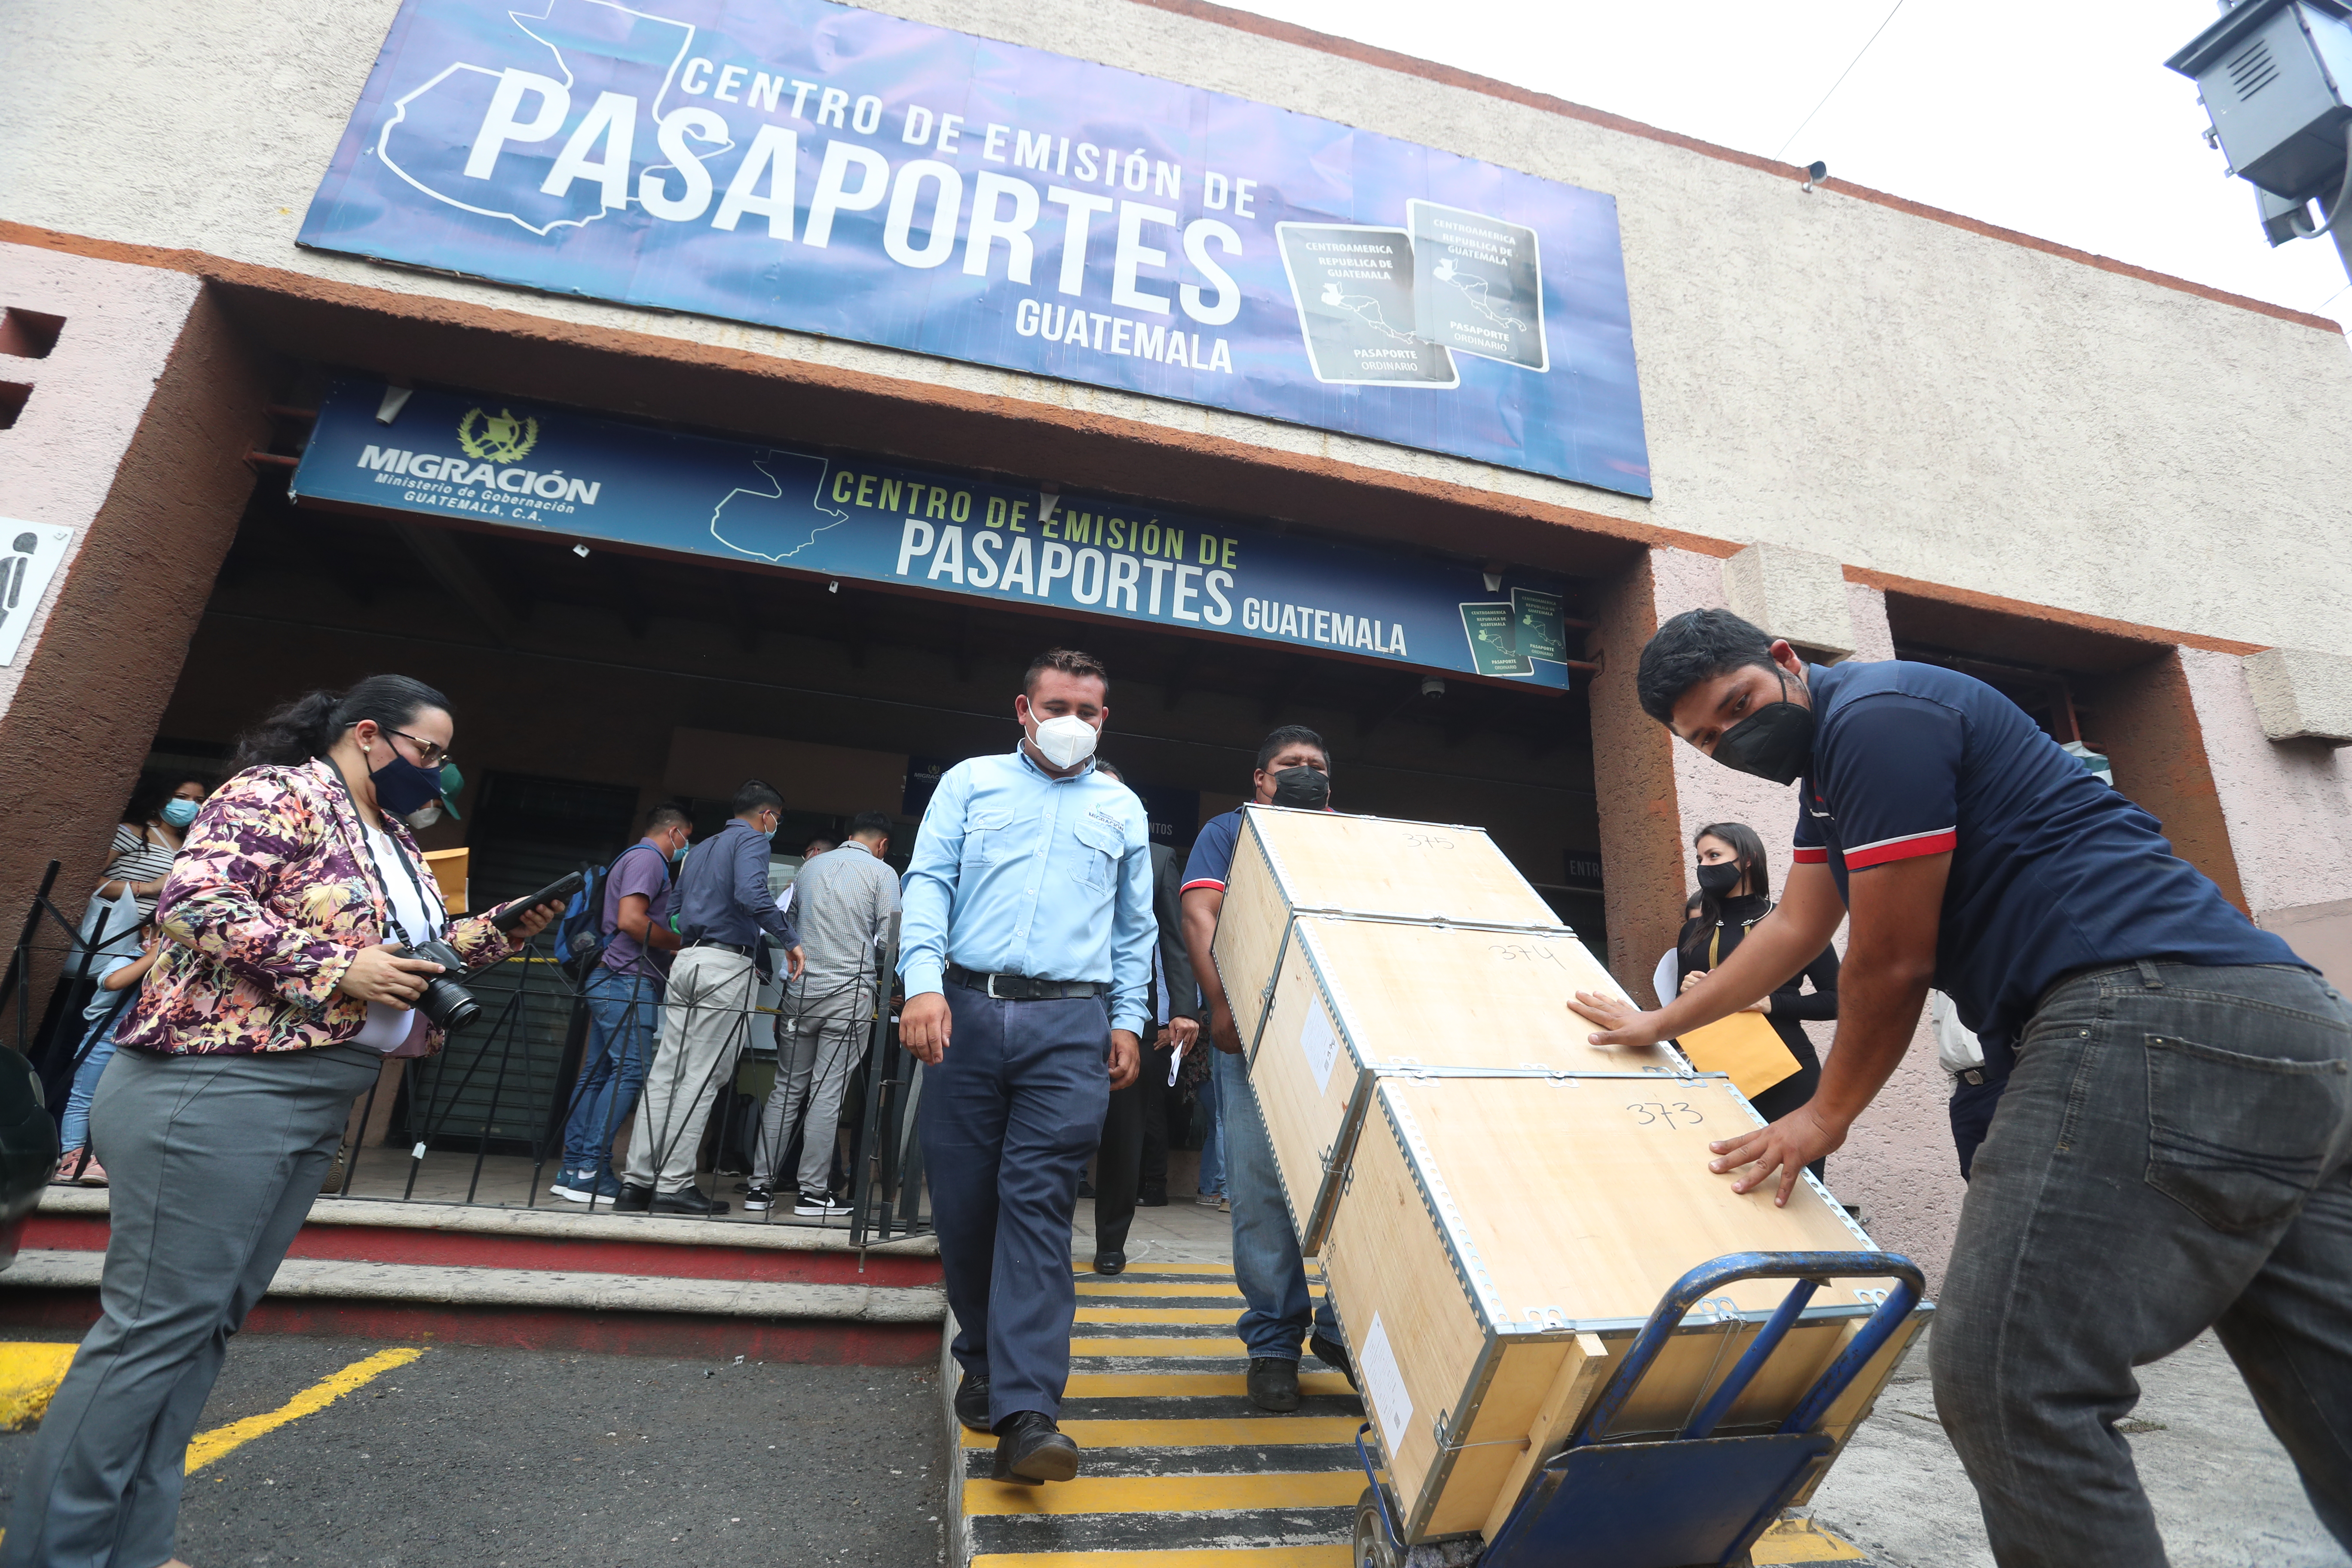 A inicios de mayo, Migracion envió 50 mil cartillas a EE. UU., en junio sumó 15 mil, pero la cantidad es insuficiente ante la enorme demanda de pasaportes. (Foto Prensa Libre: Juan Diego González)